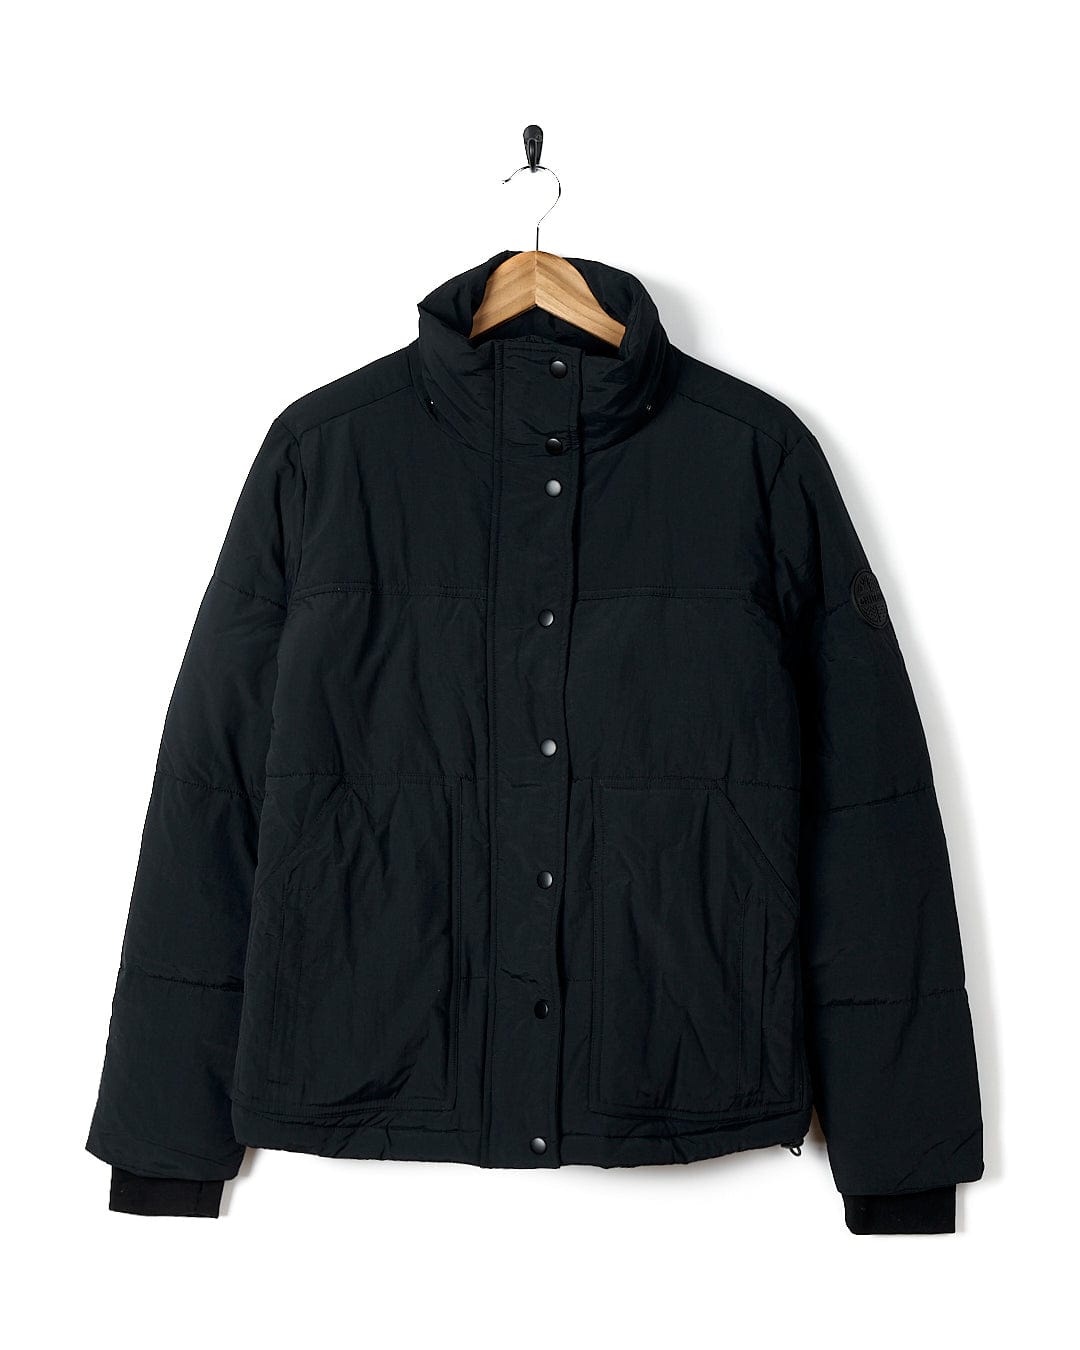 A Saltrock Aspen - Womens Short Puffer Jacket - Black with a detachable hood.